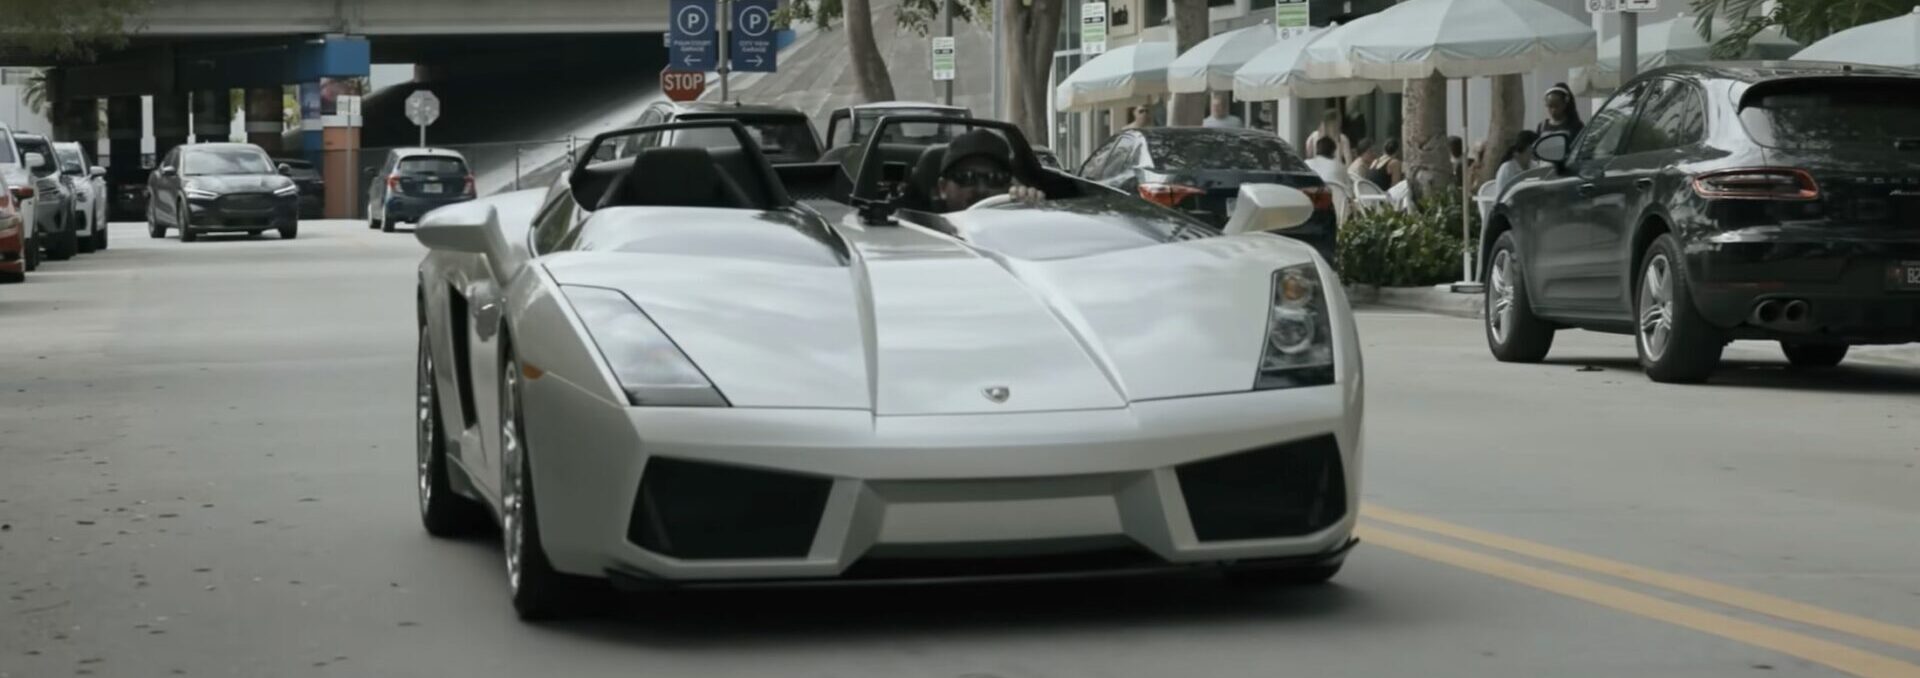 Lamborghini планировала построить 100 таких Gallardo, но внезапно решила отказаться от проекта